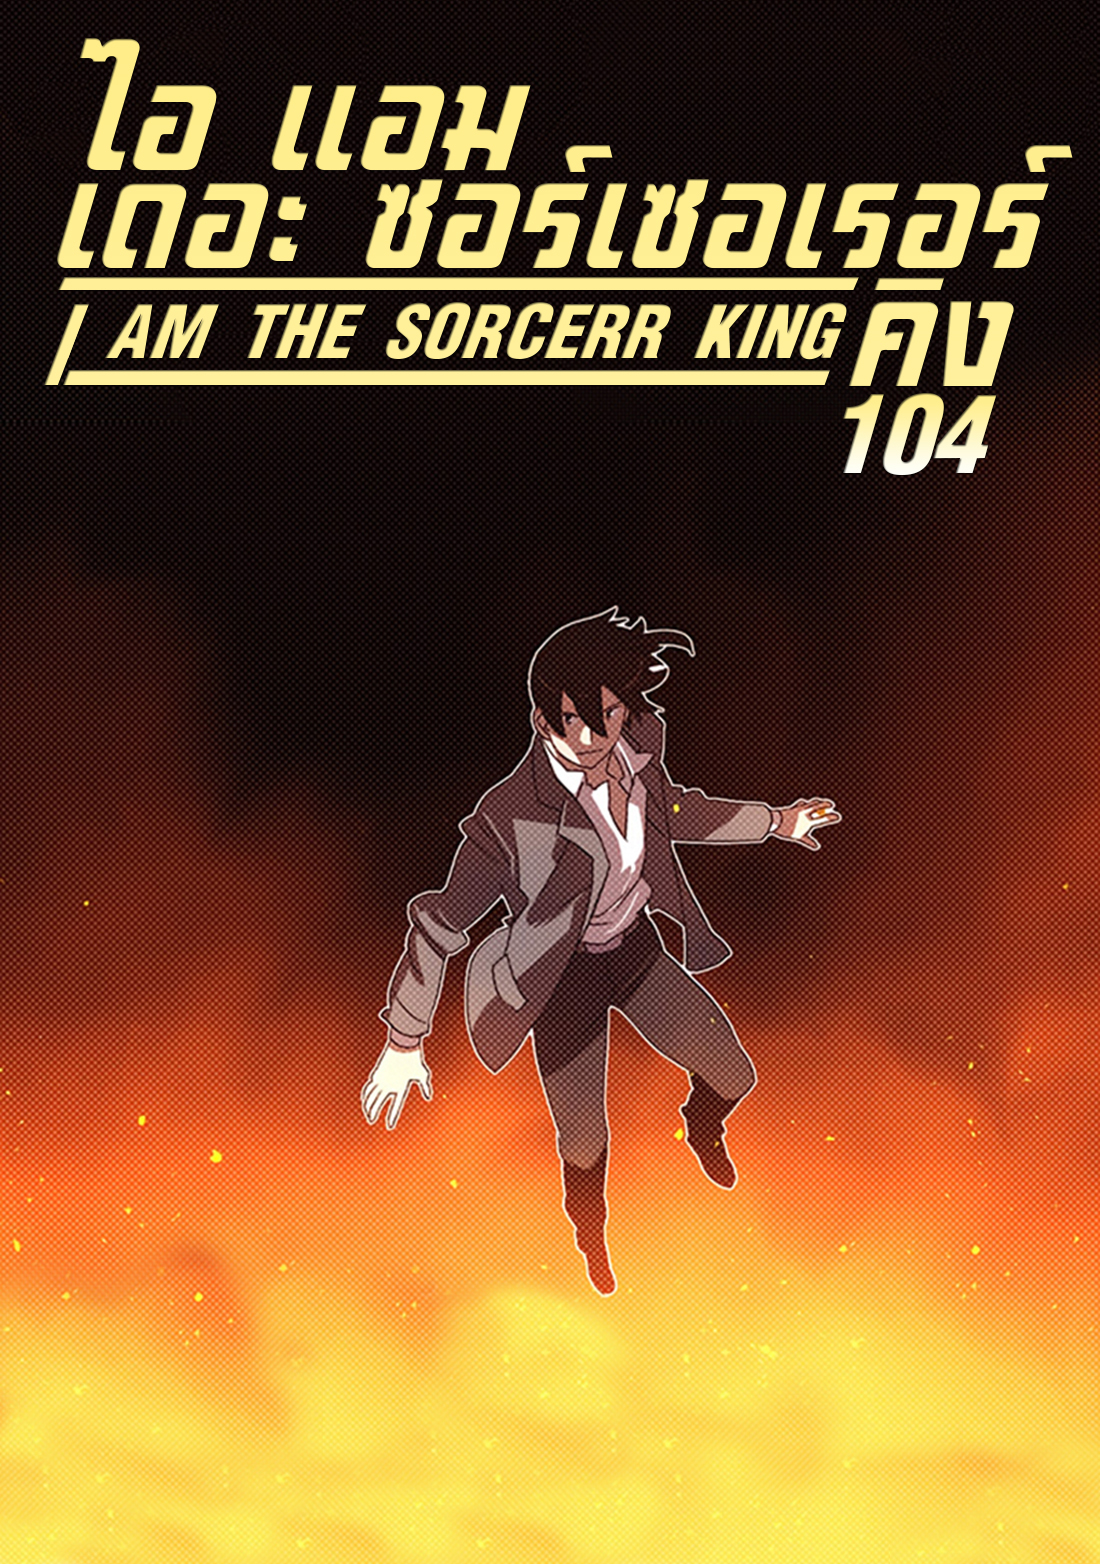 I AM THE SORCERER KING 104 (1)